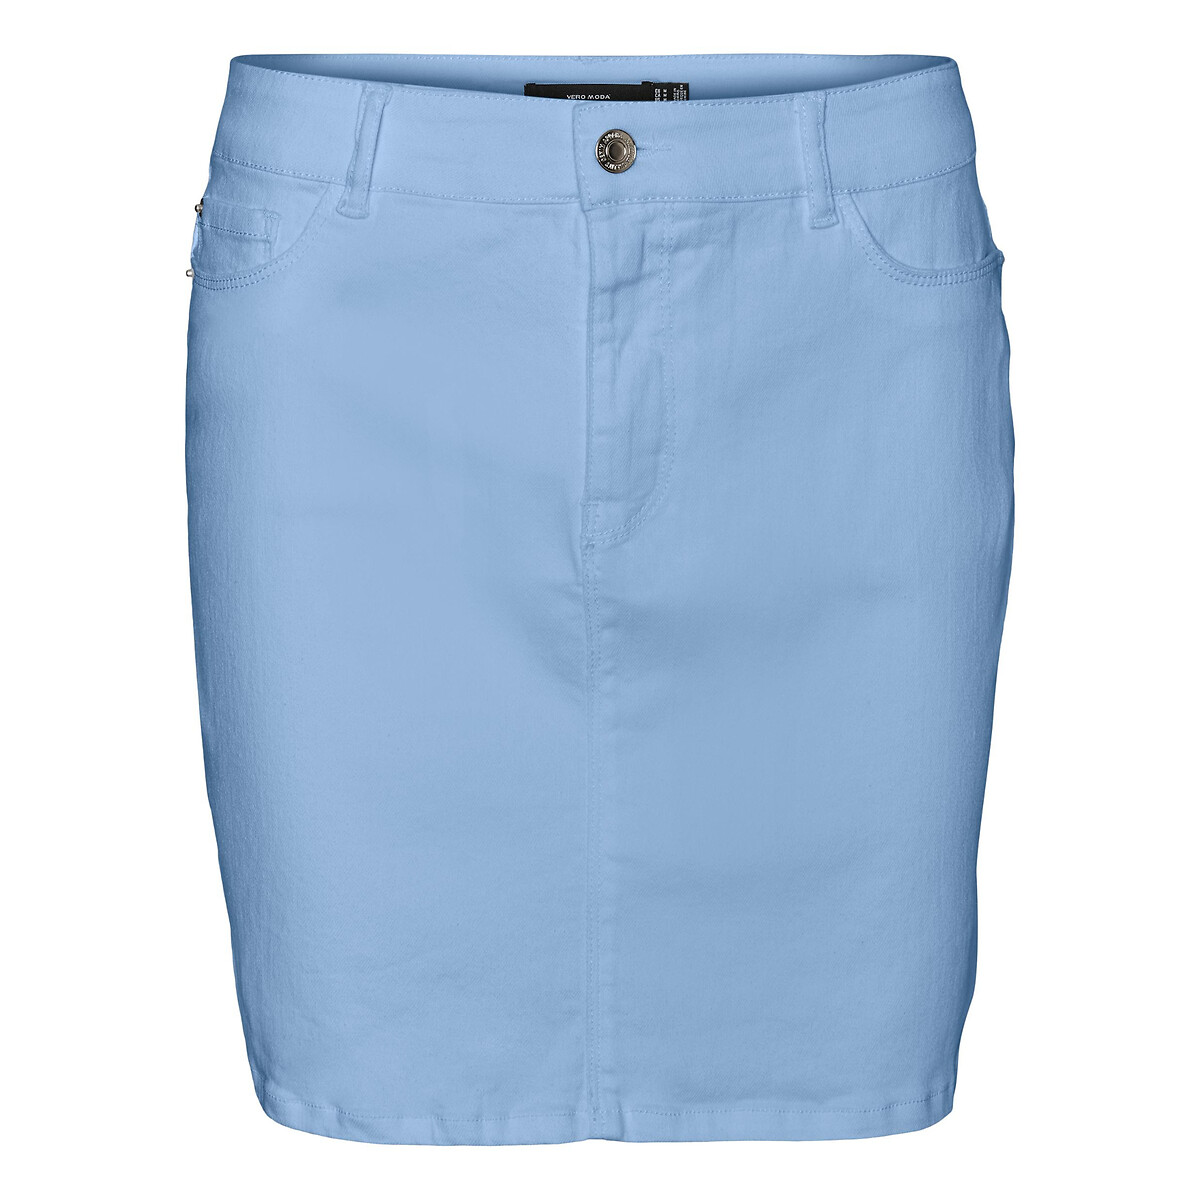 Юбка VERO MODA Короткая из джинсовой ткани S синий, размер S